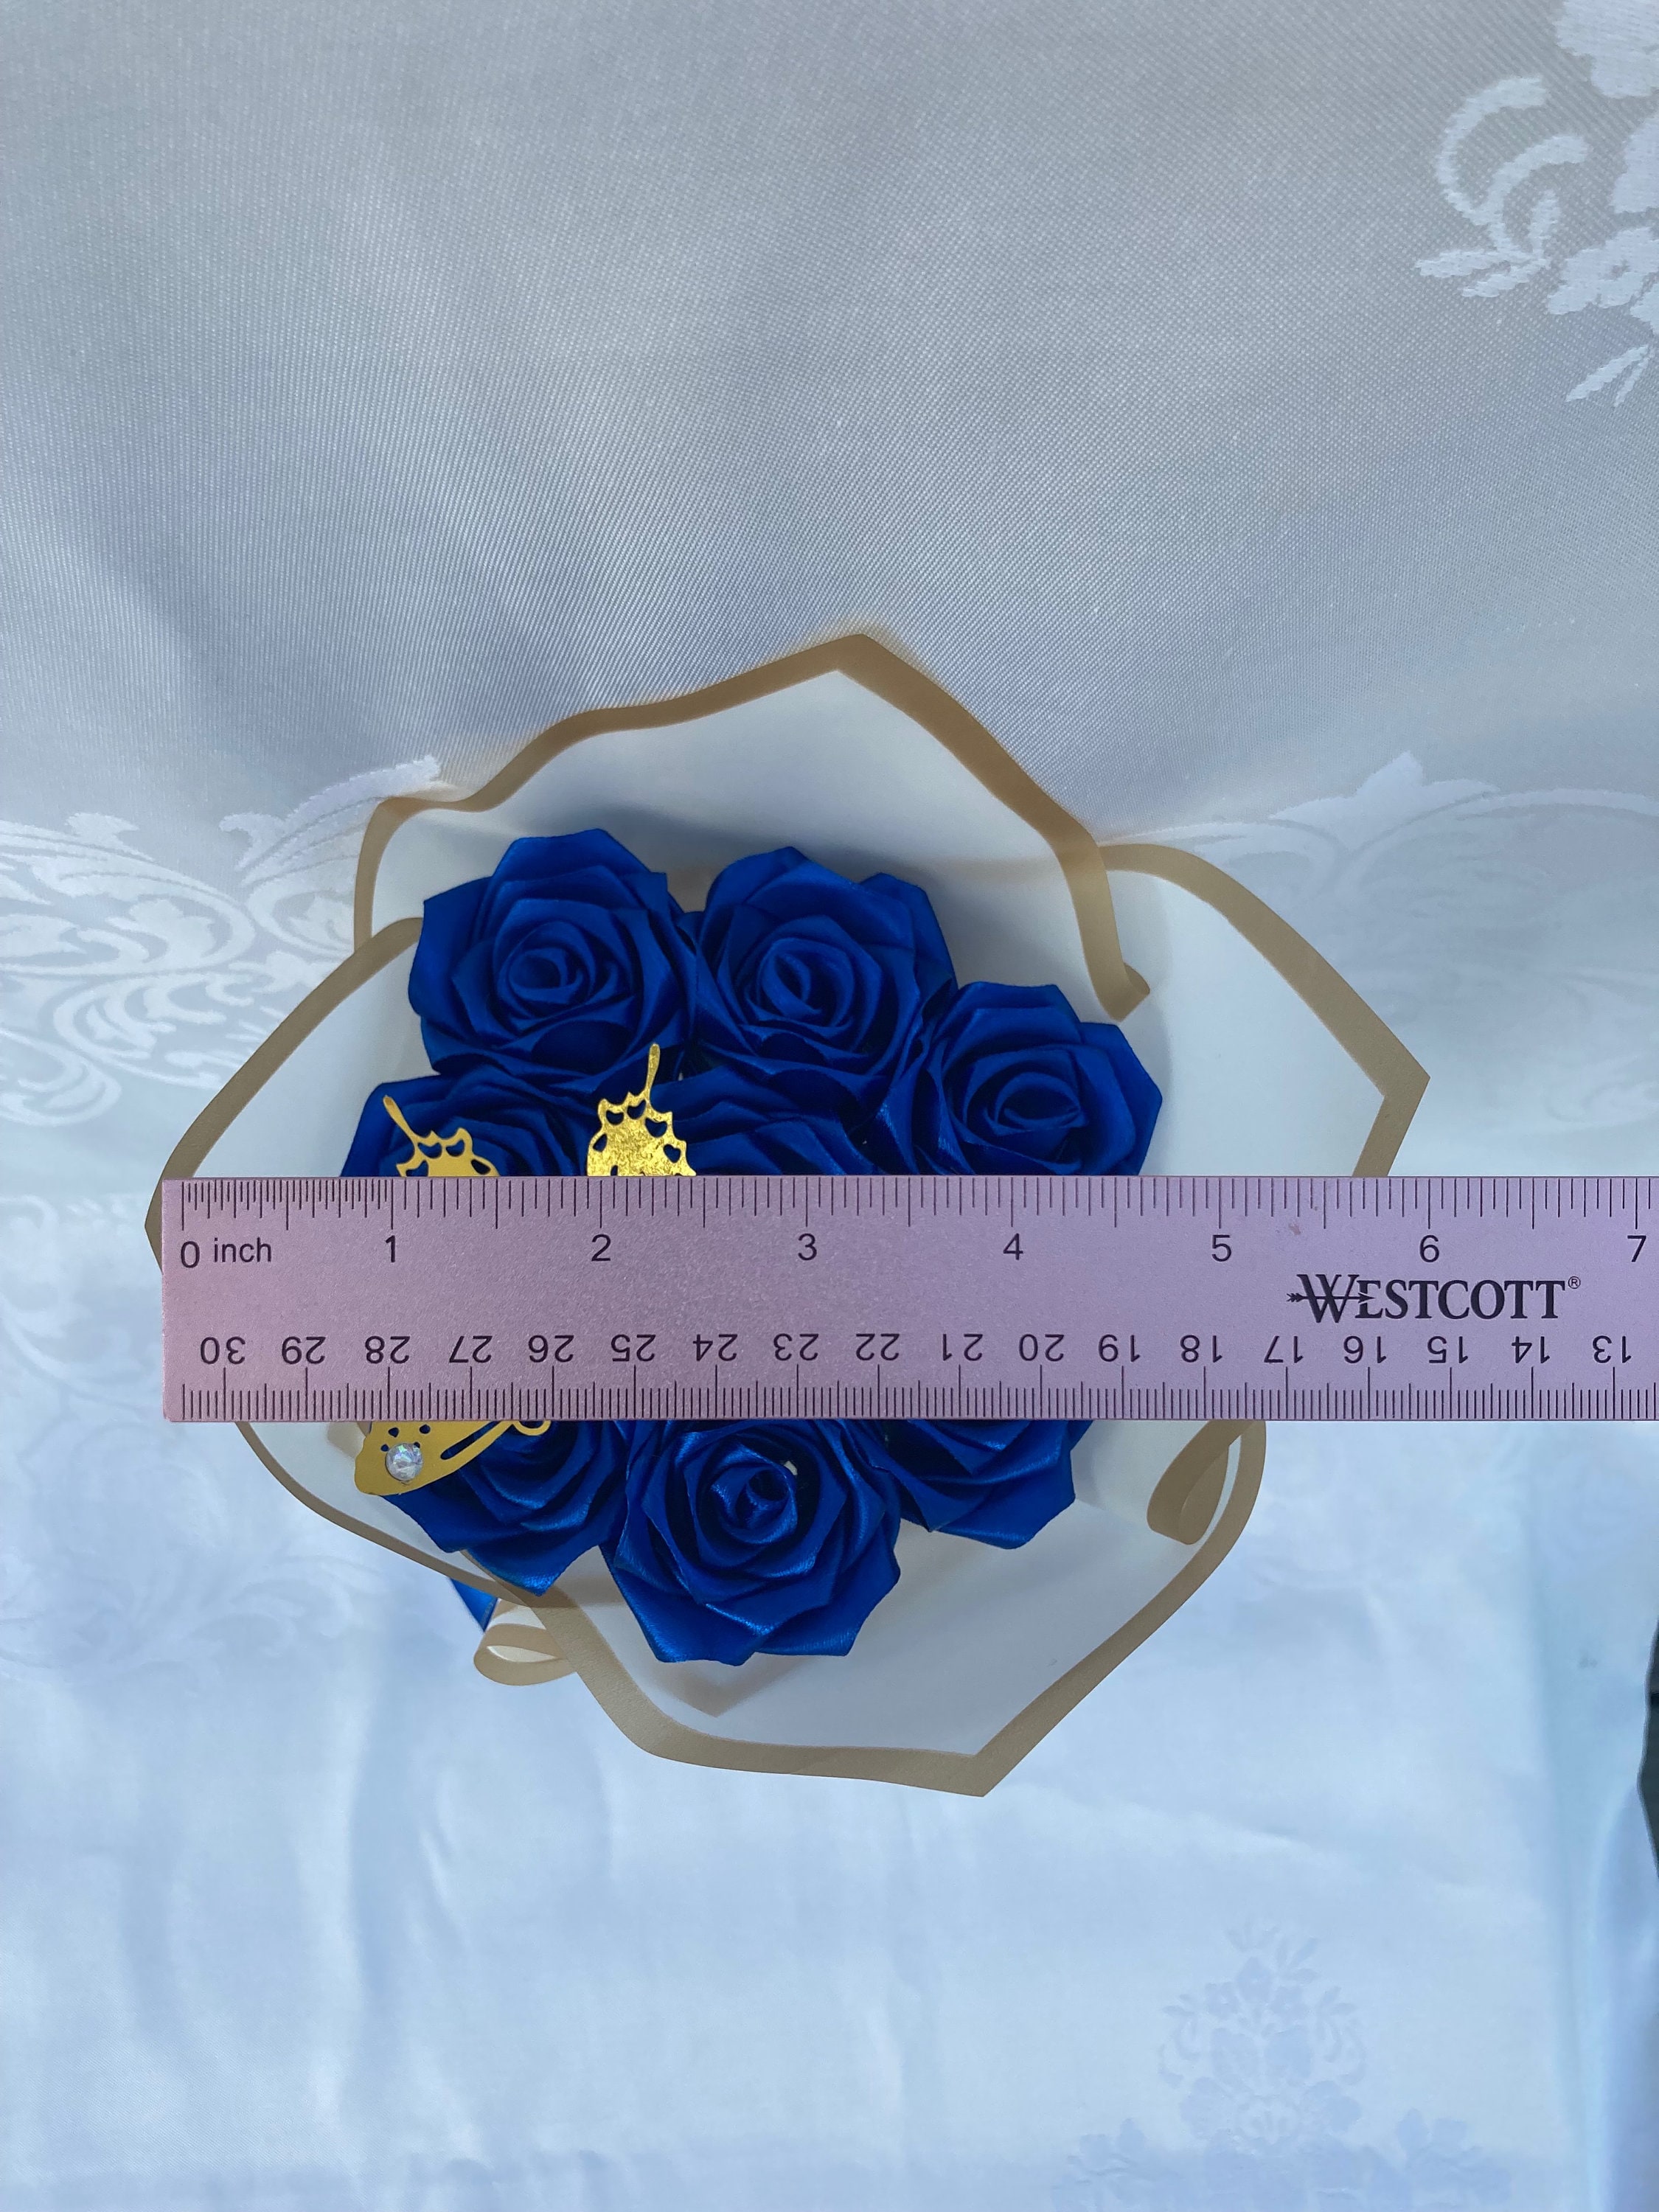 100 Rose Royal Blue Bouquet, Queen Bouquet, Eternal Rose Bouquet, Birthday  Bouquet, Engagement Bouquet, Ever Lasting Flowers, Ramo Buchon 